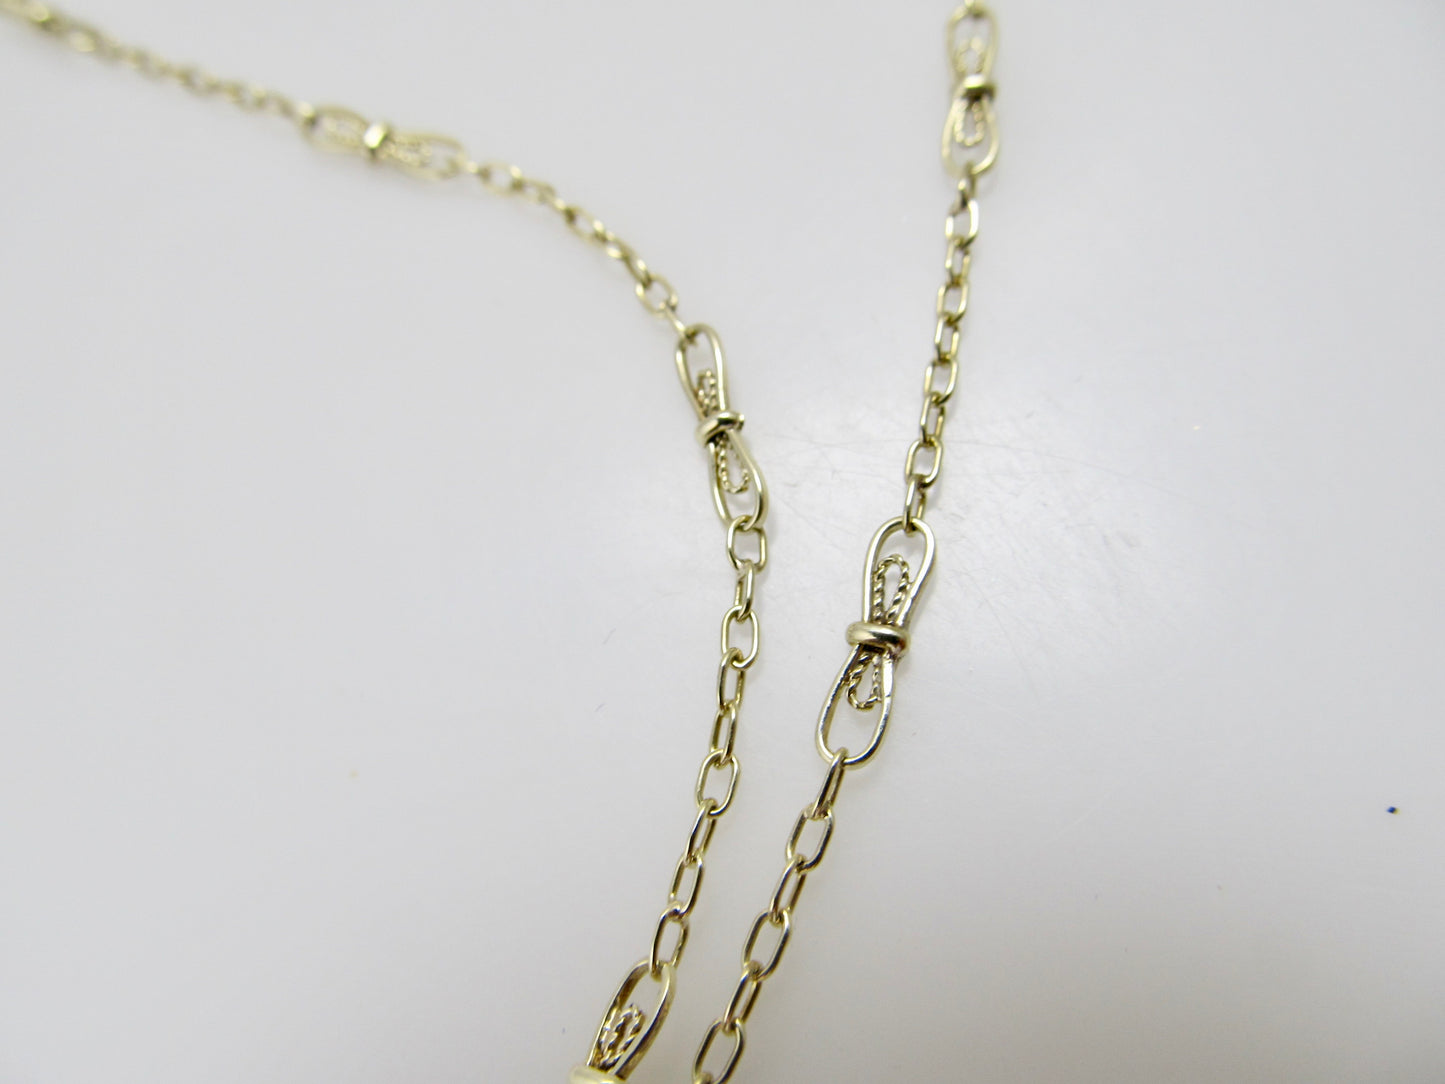 Antique lapis necklace, 14k yellow gold